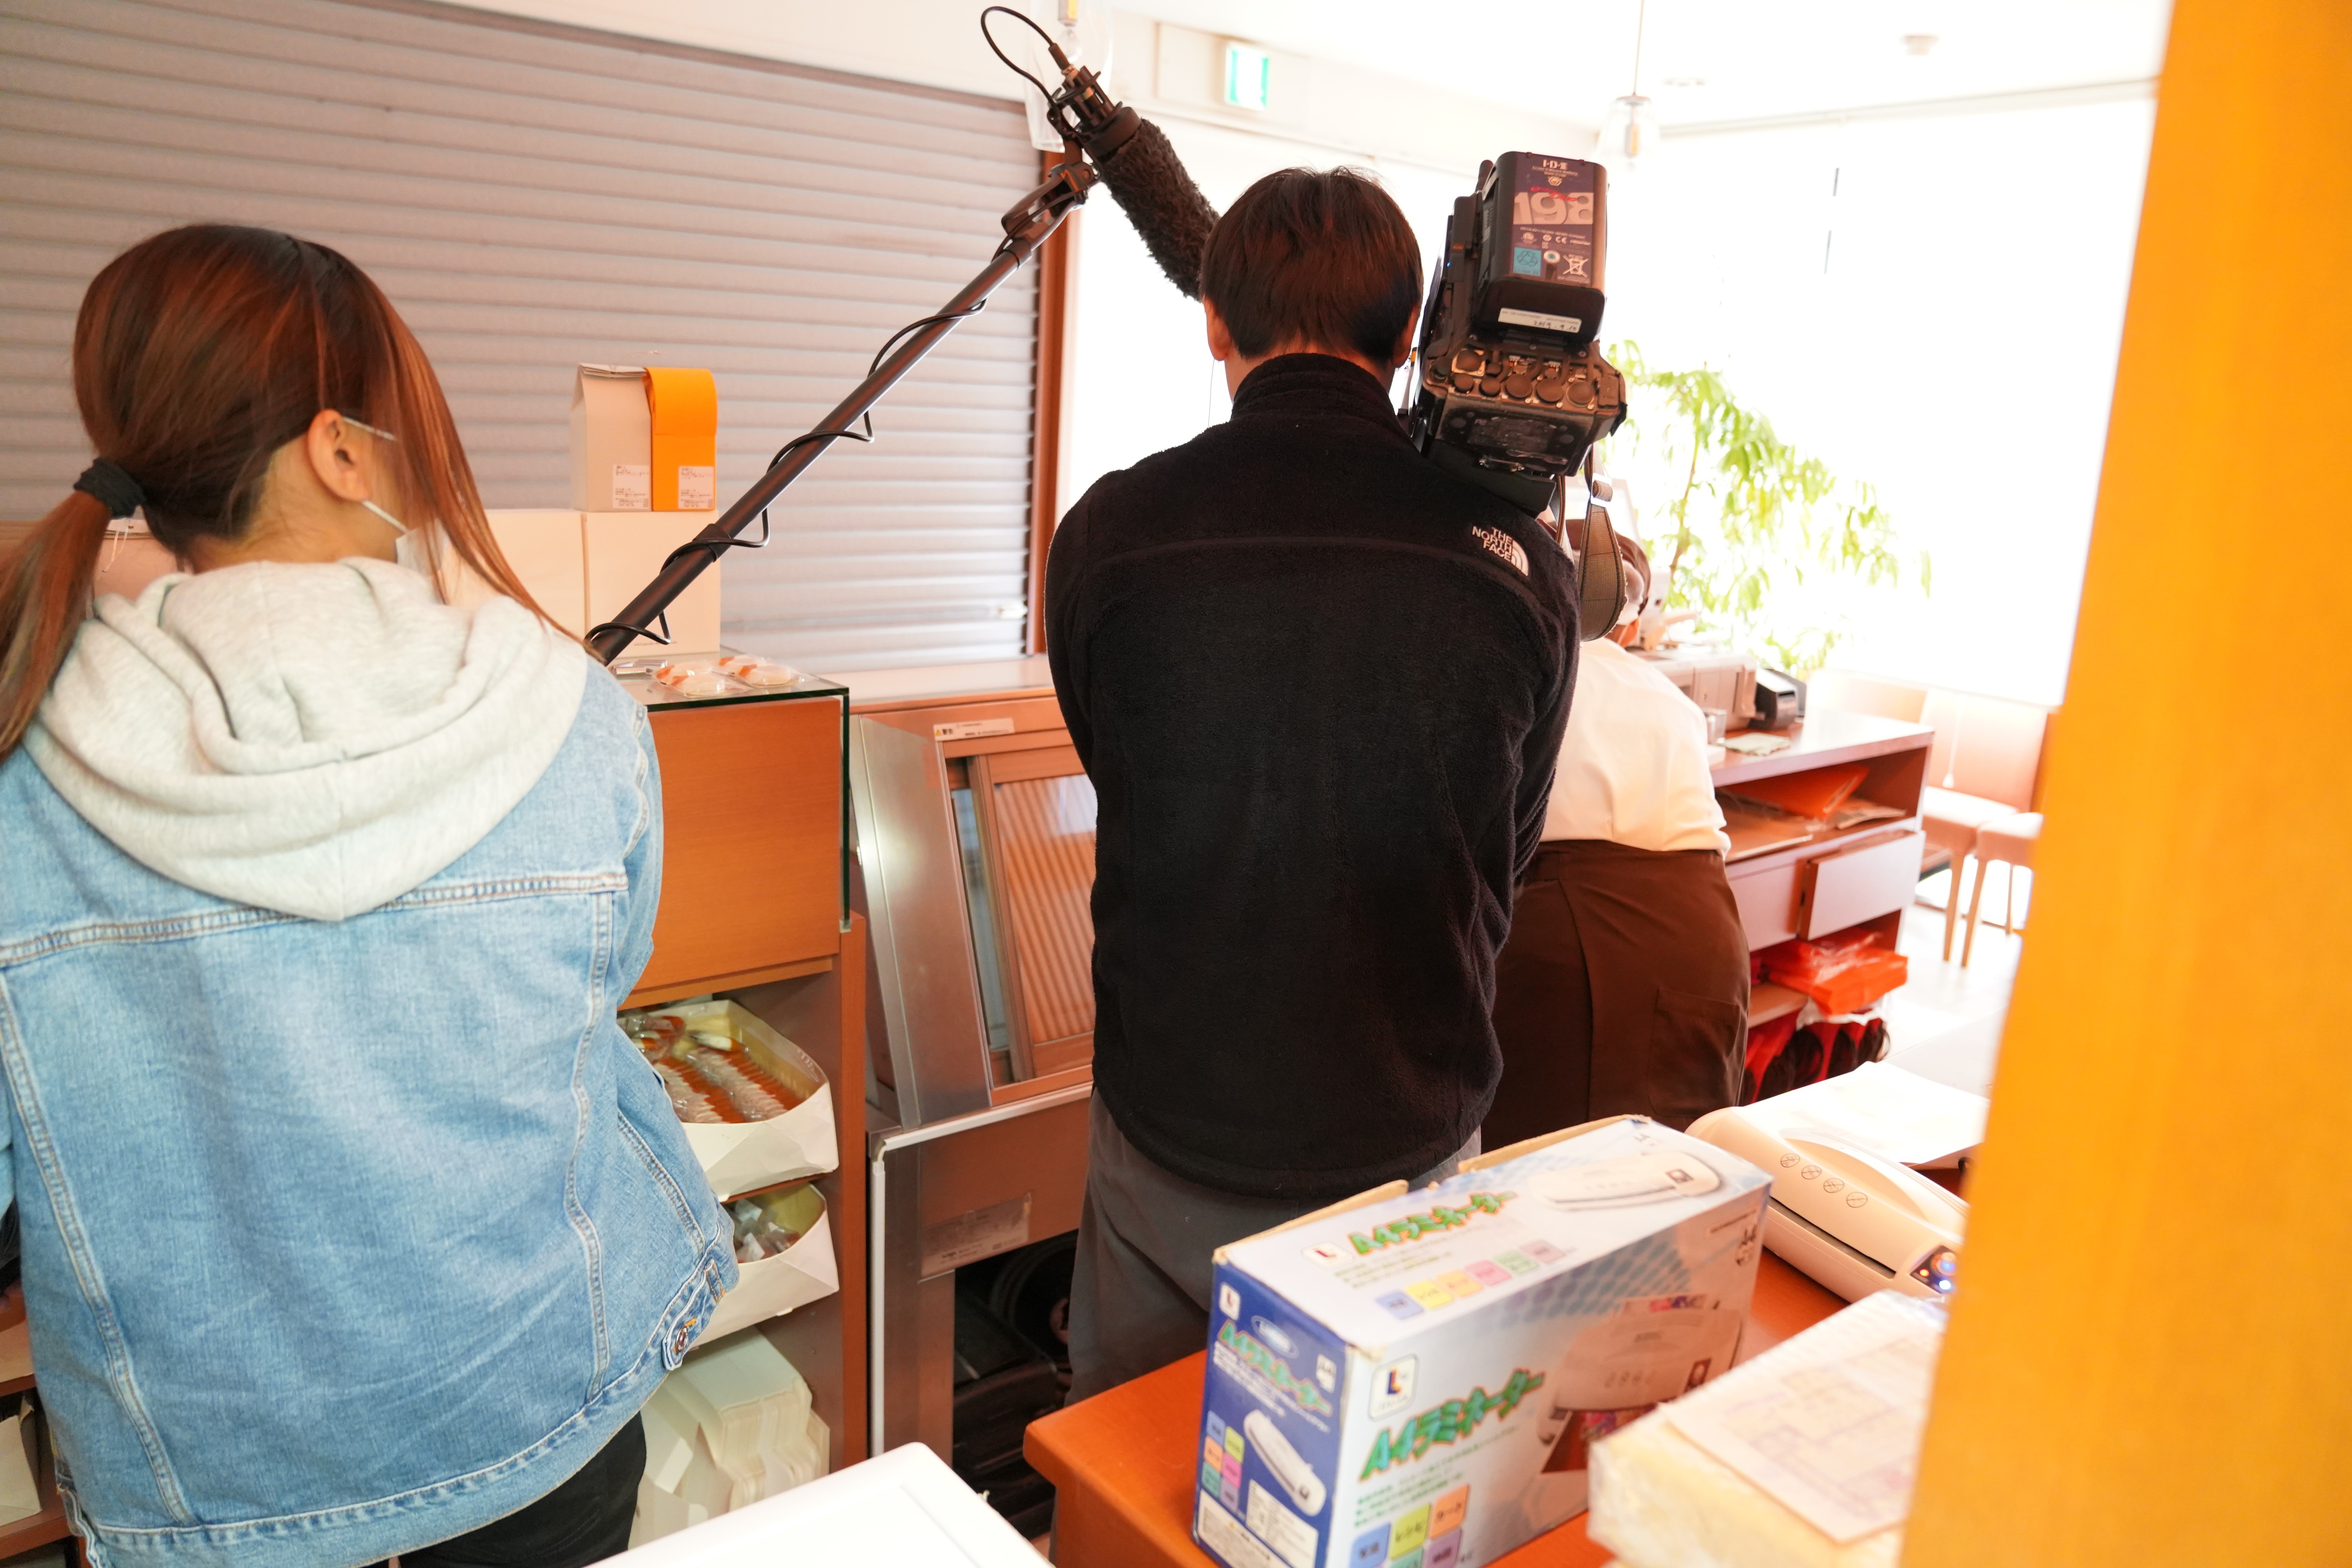 【単なる告知】今日の夕方の関西情報ネットten.「街の洋菓子店倒産が増えている特集？」